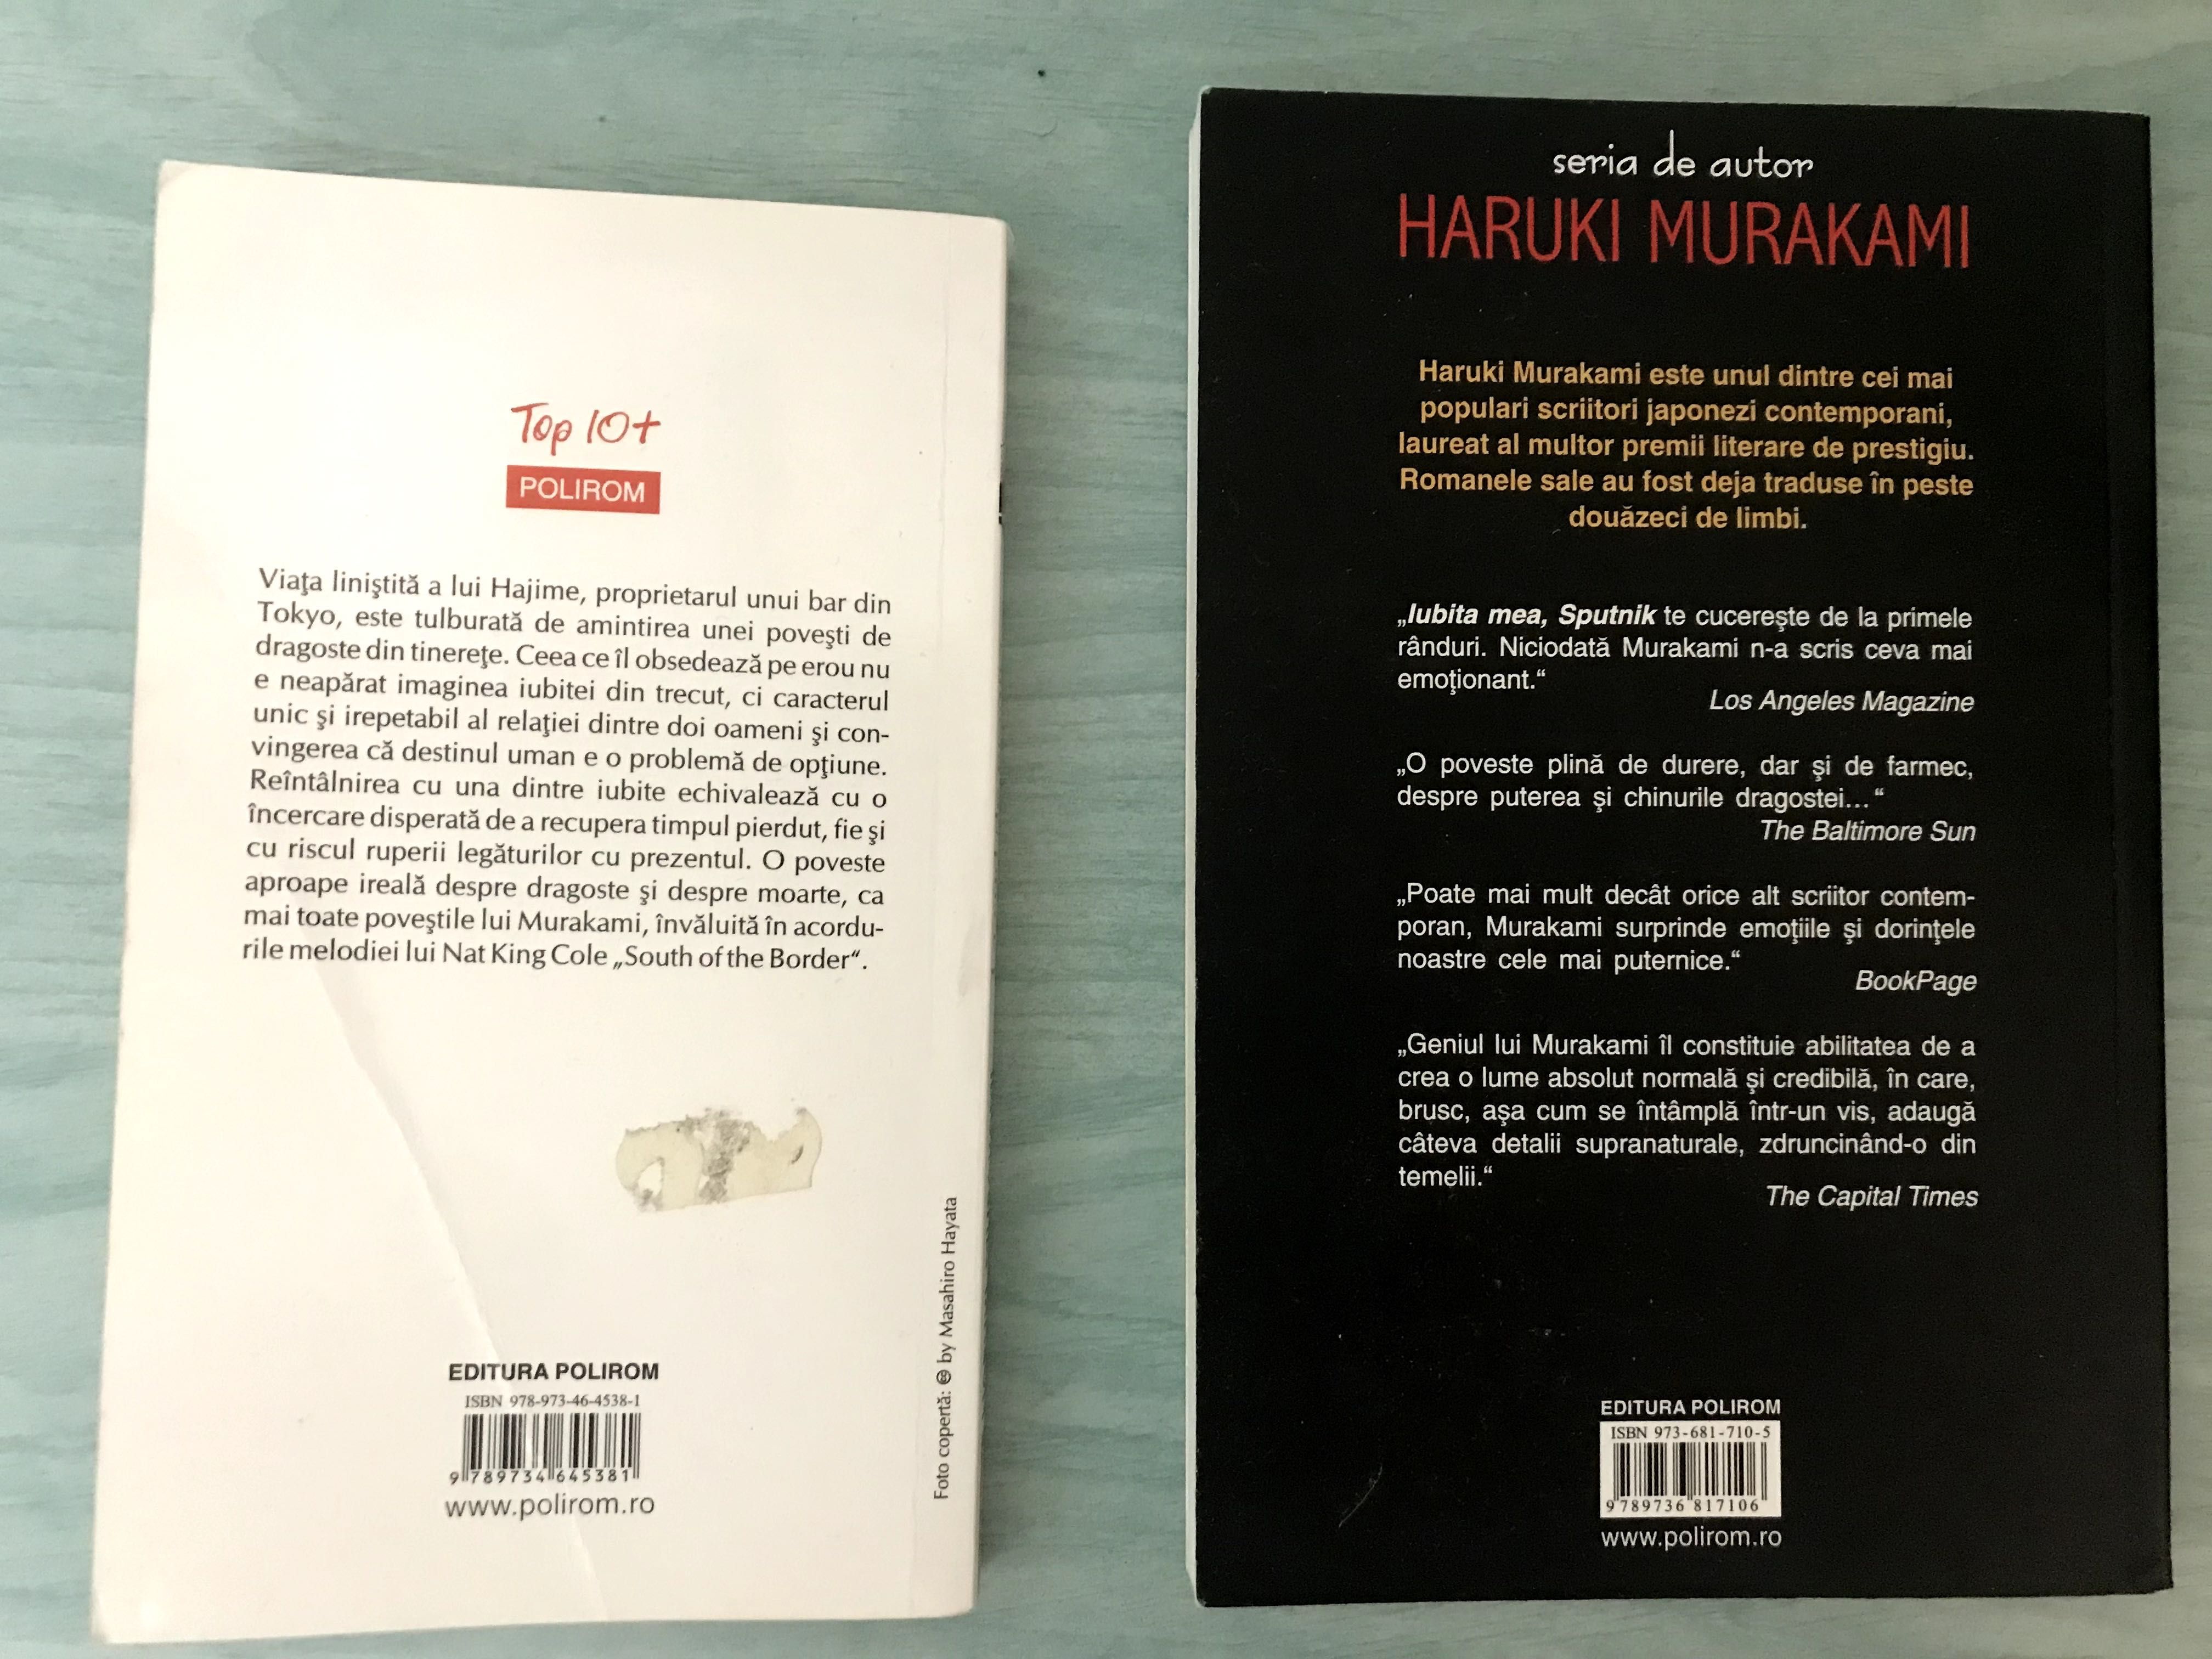 Cărți Haruki Murakami: "La sud de graniță..." și "Iubita mea, Sputnik"